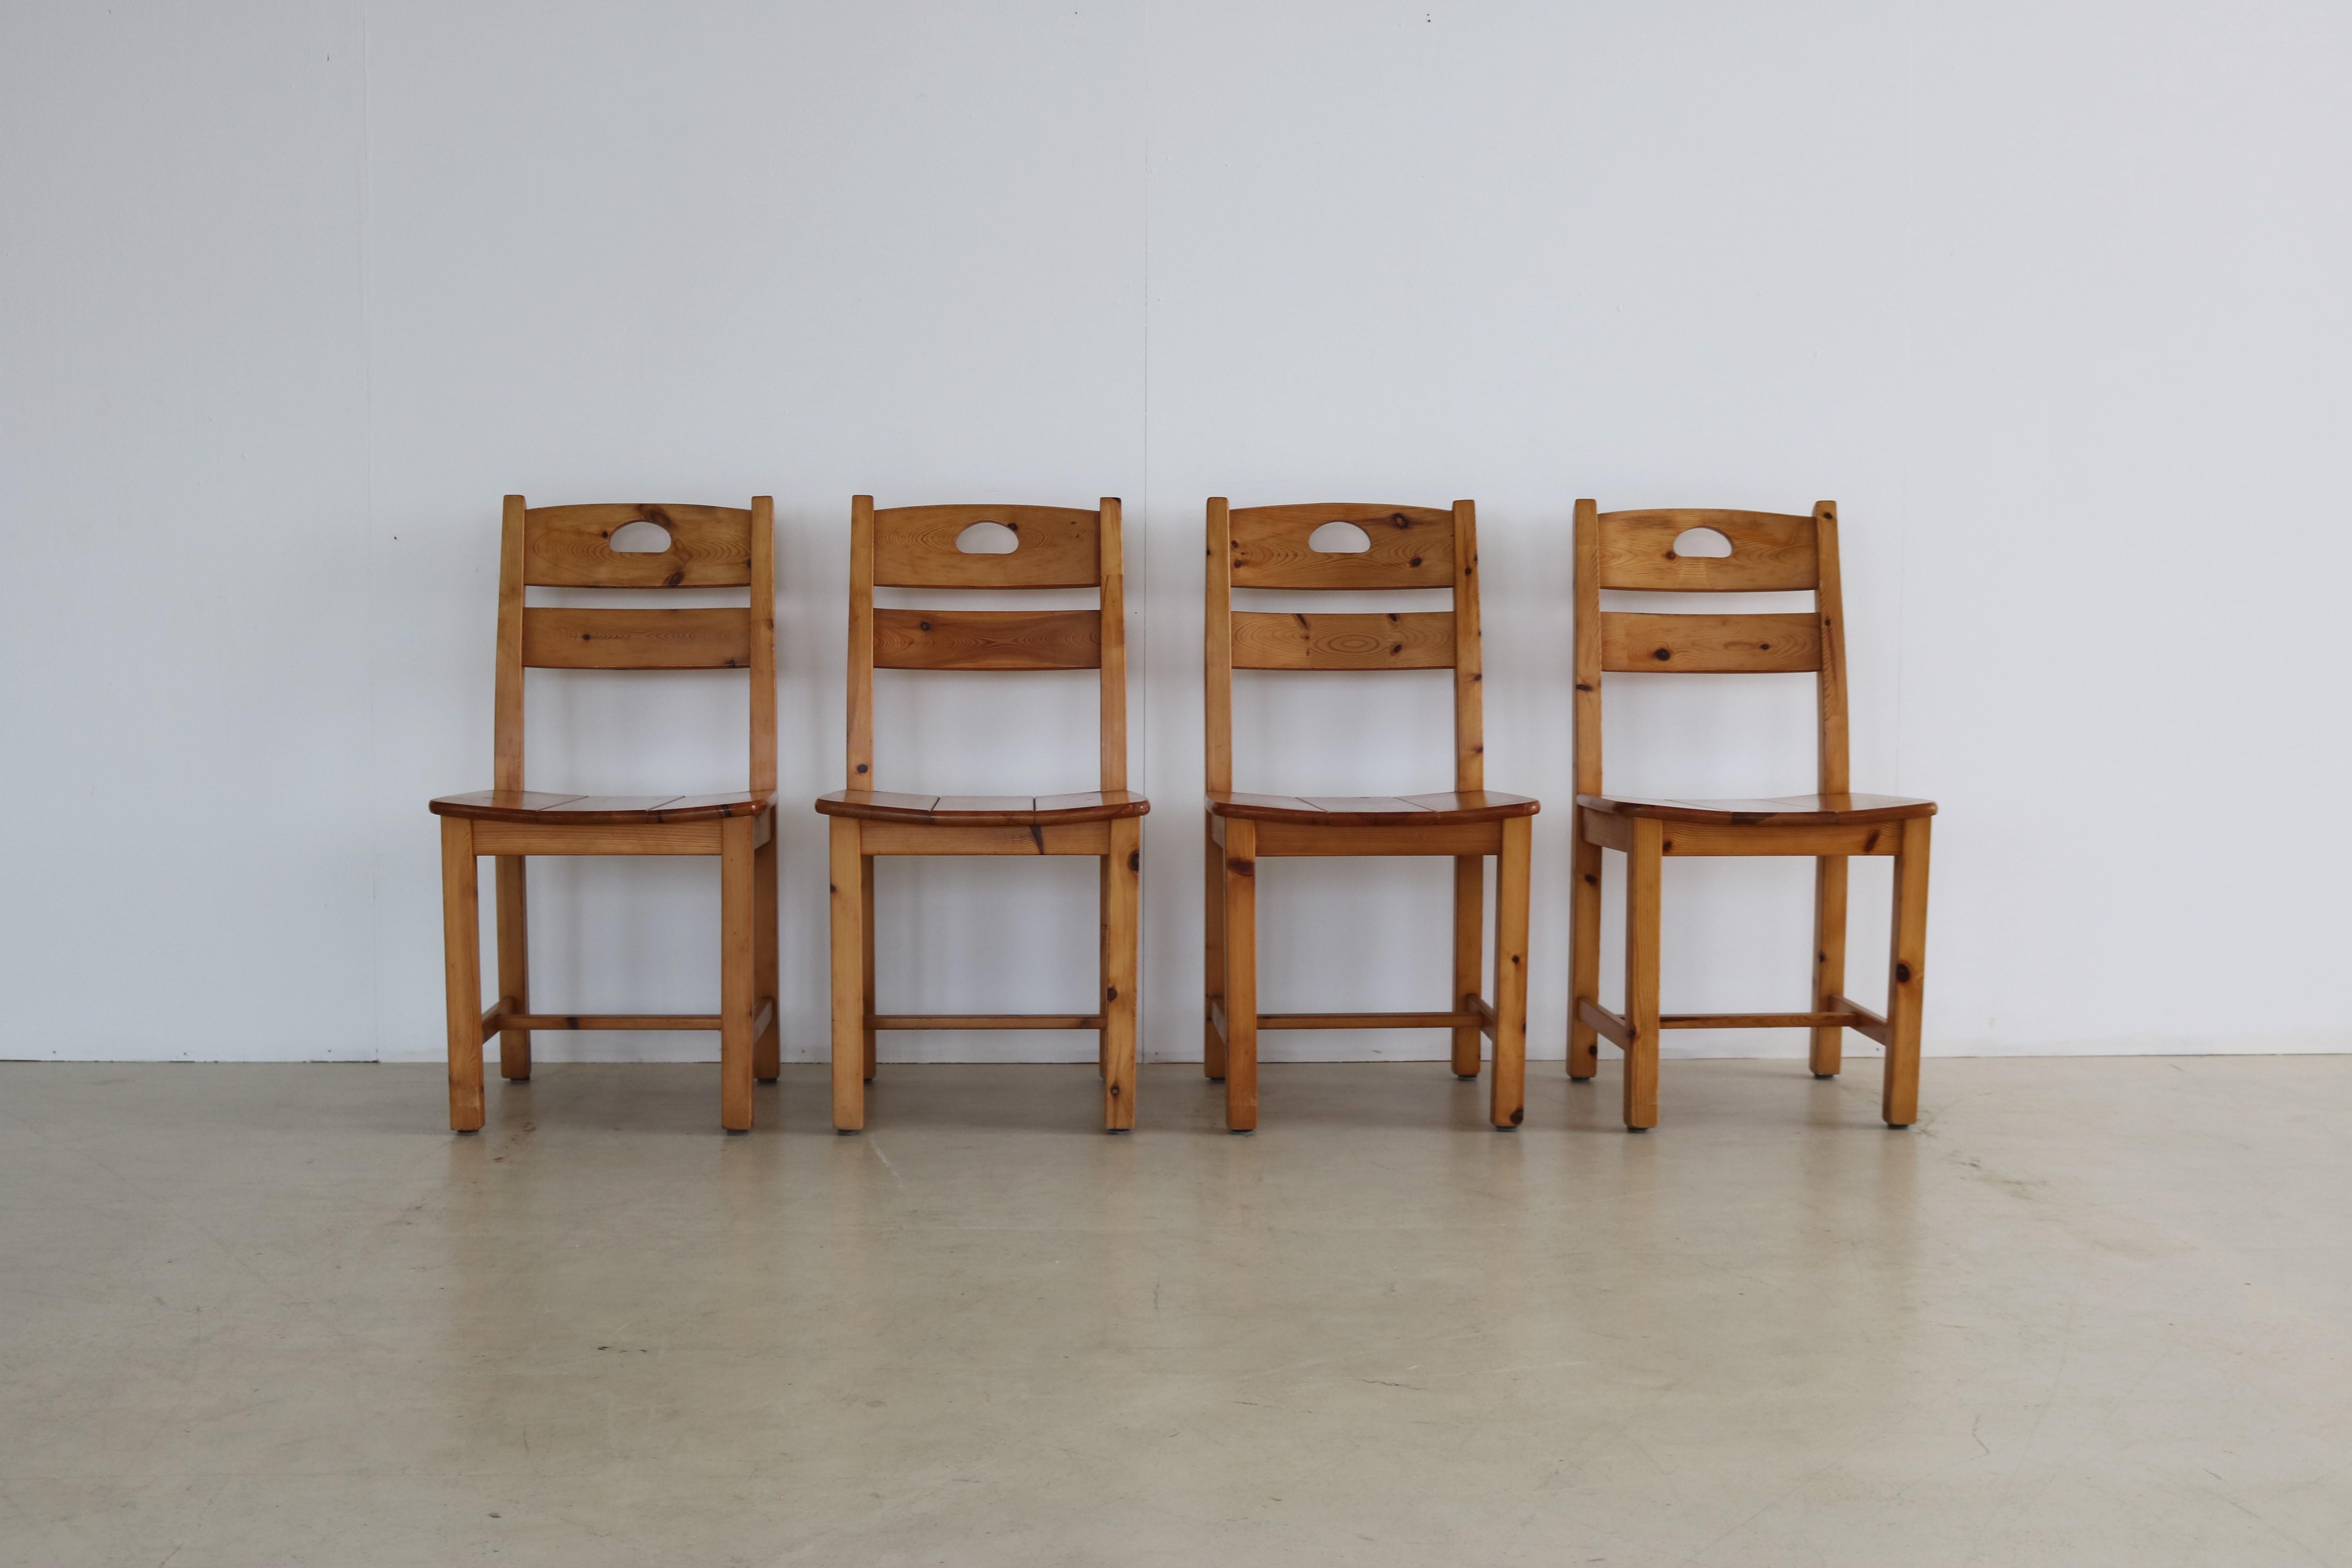 Chaises de salle à manger vintage  chaises  pin

période  70s
Design/One  inconnu  Suède
condition  bon  légers signes d'utilisation
taille  89 x 46 x 50 (hxwxd) hauteur du siège 46 cm ;

détails  pin ; ensemble de 4 ;

numéro d'article  2318